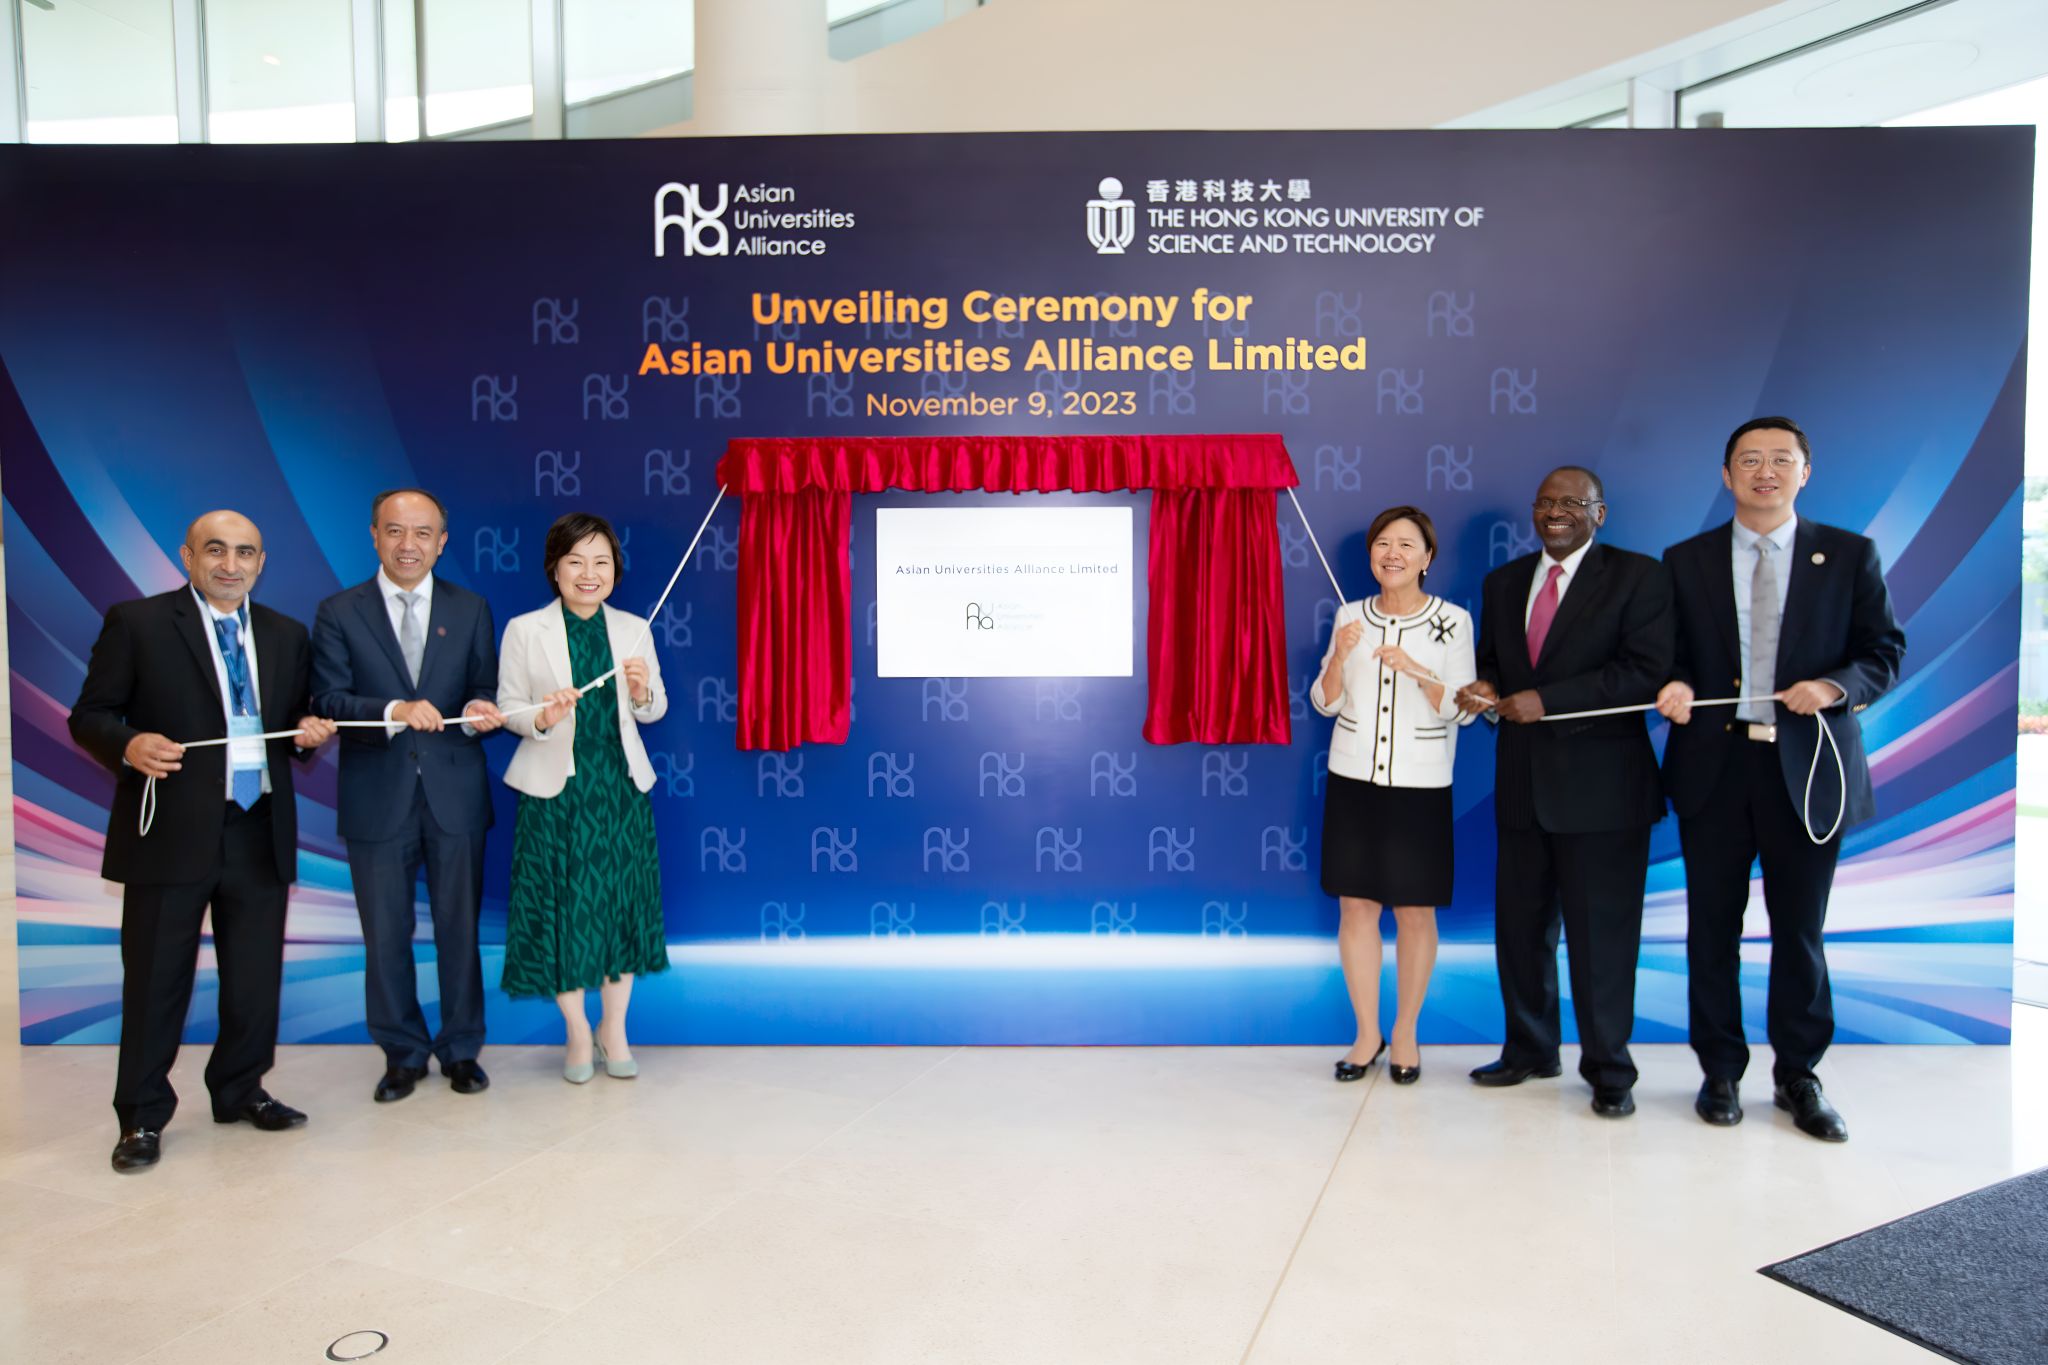 香港特别行政区教育局局长蔡若莲为「Asian Universities Alliance Limited」主持揭牌仪式。